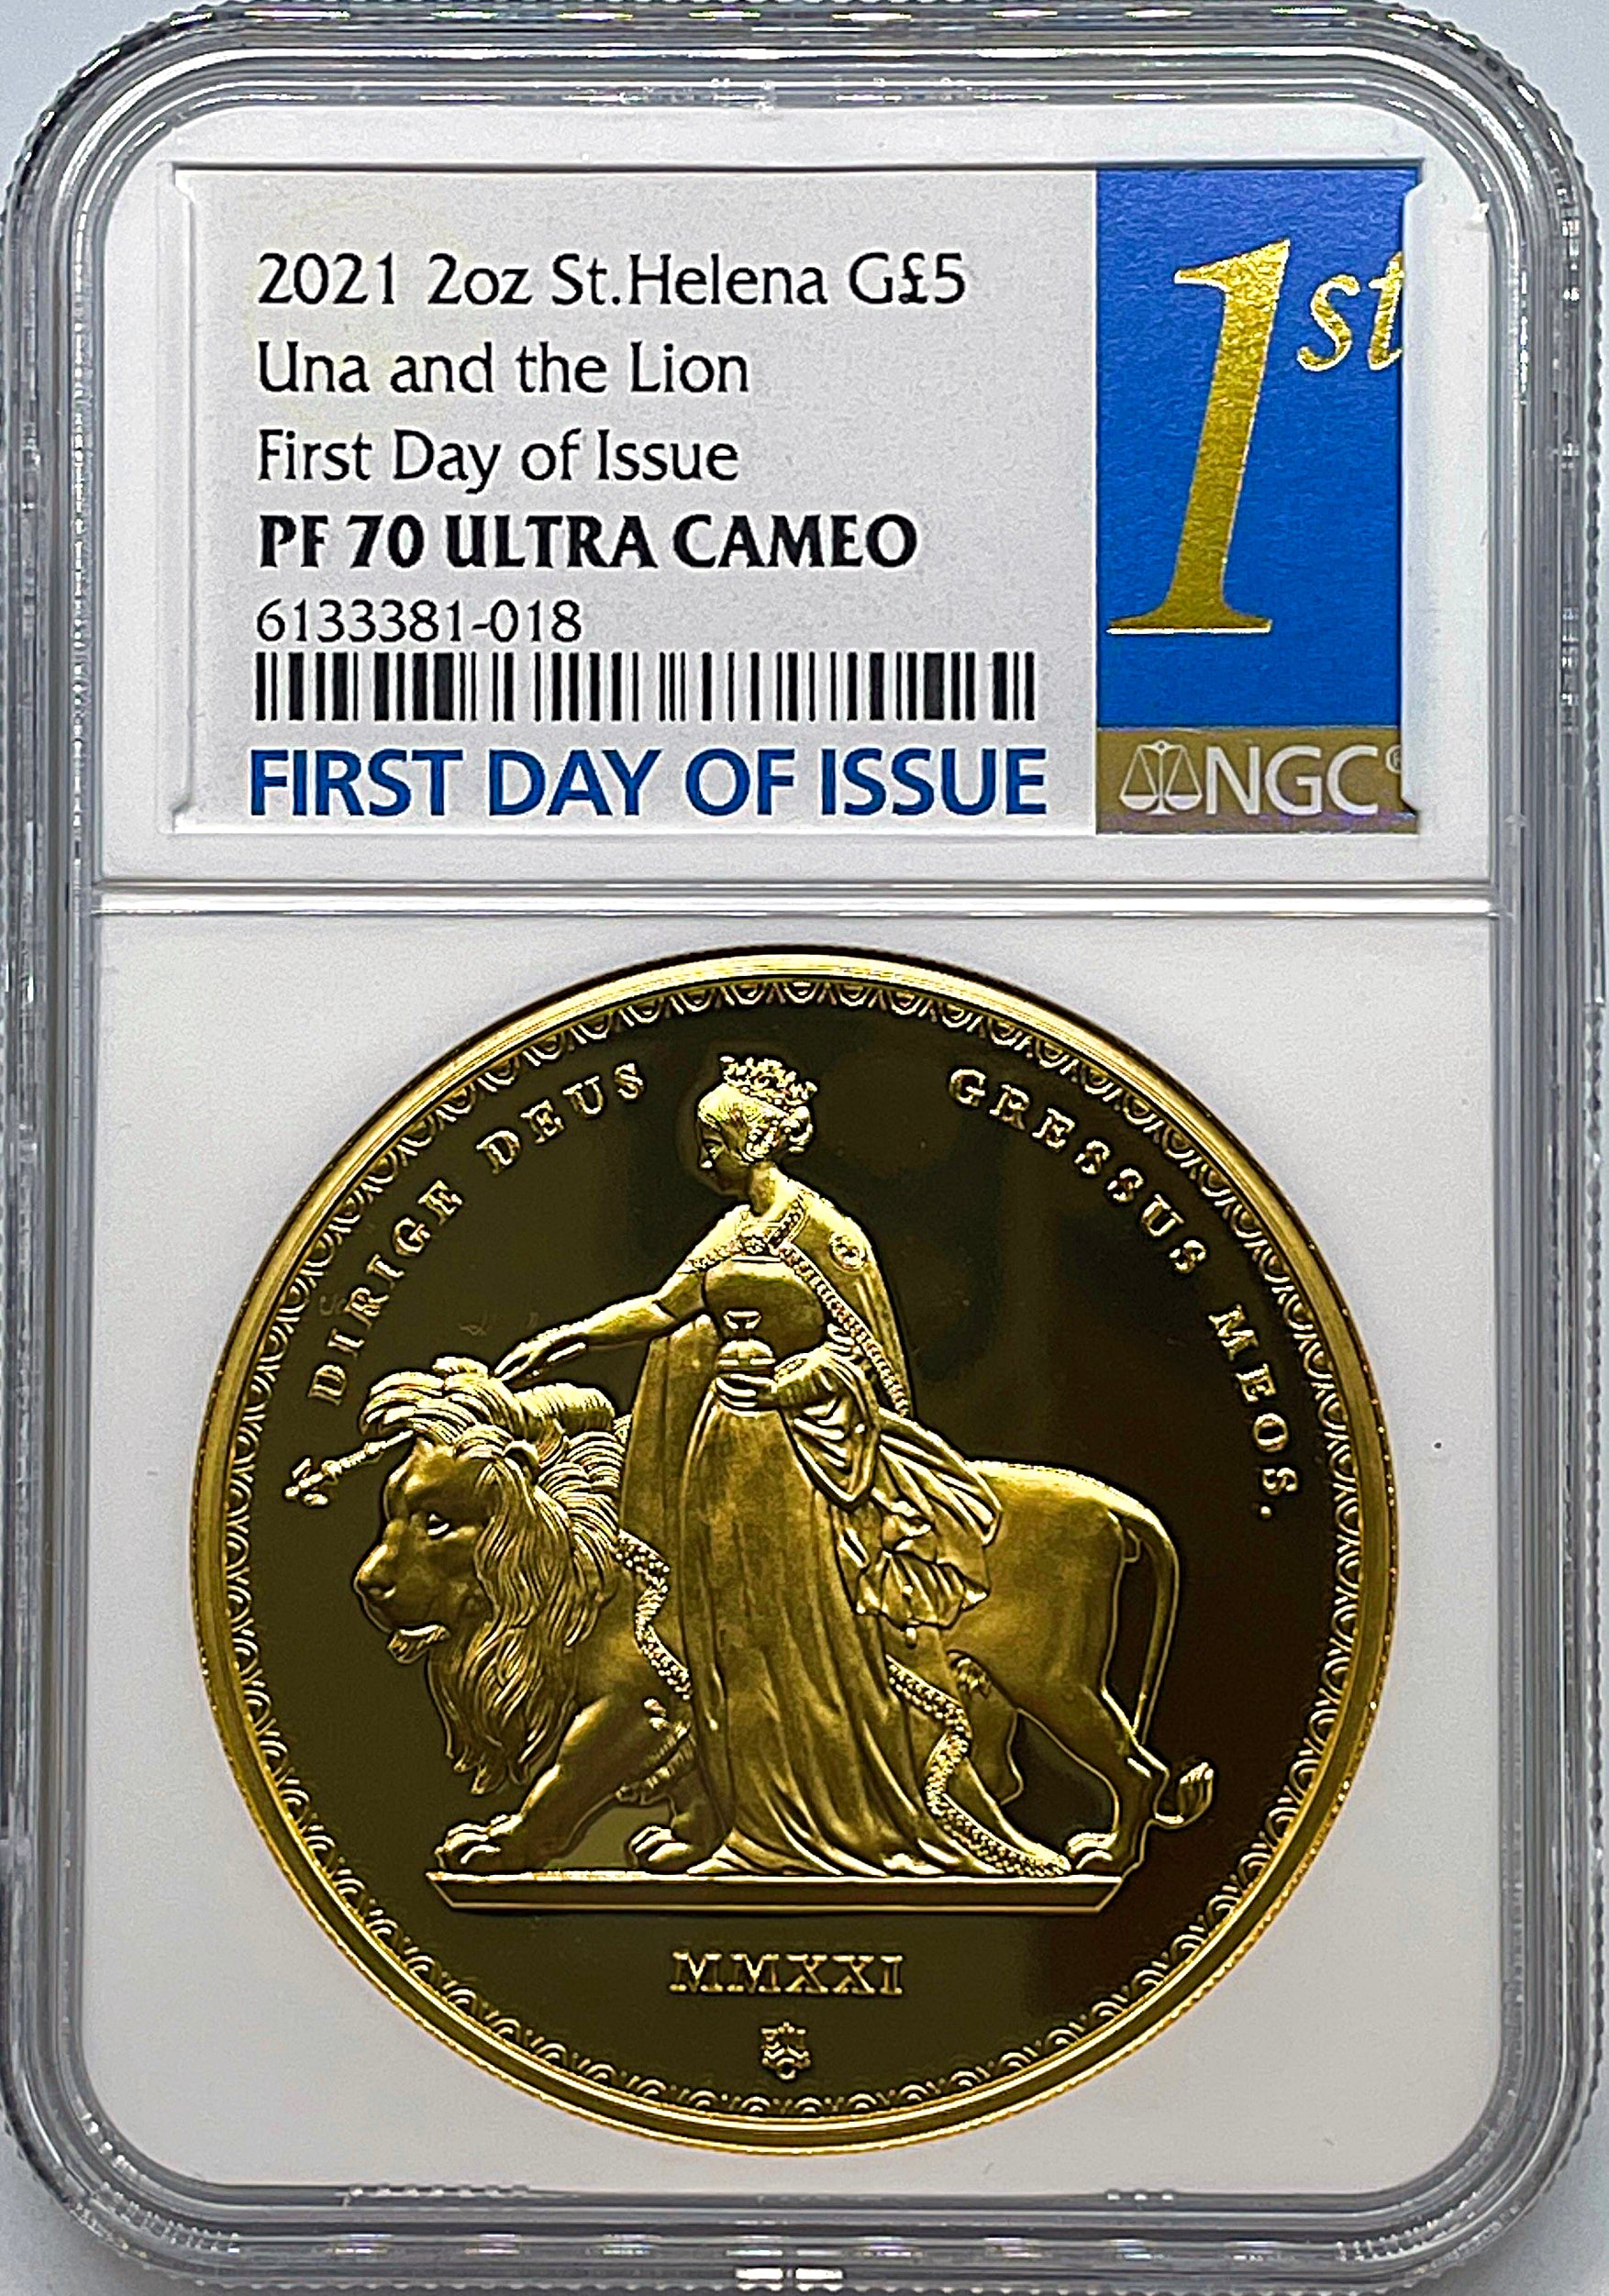 2021 ウナライオン 1oz £1 ゴールドプレート銀貨 NGC PF70UC